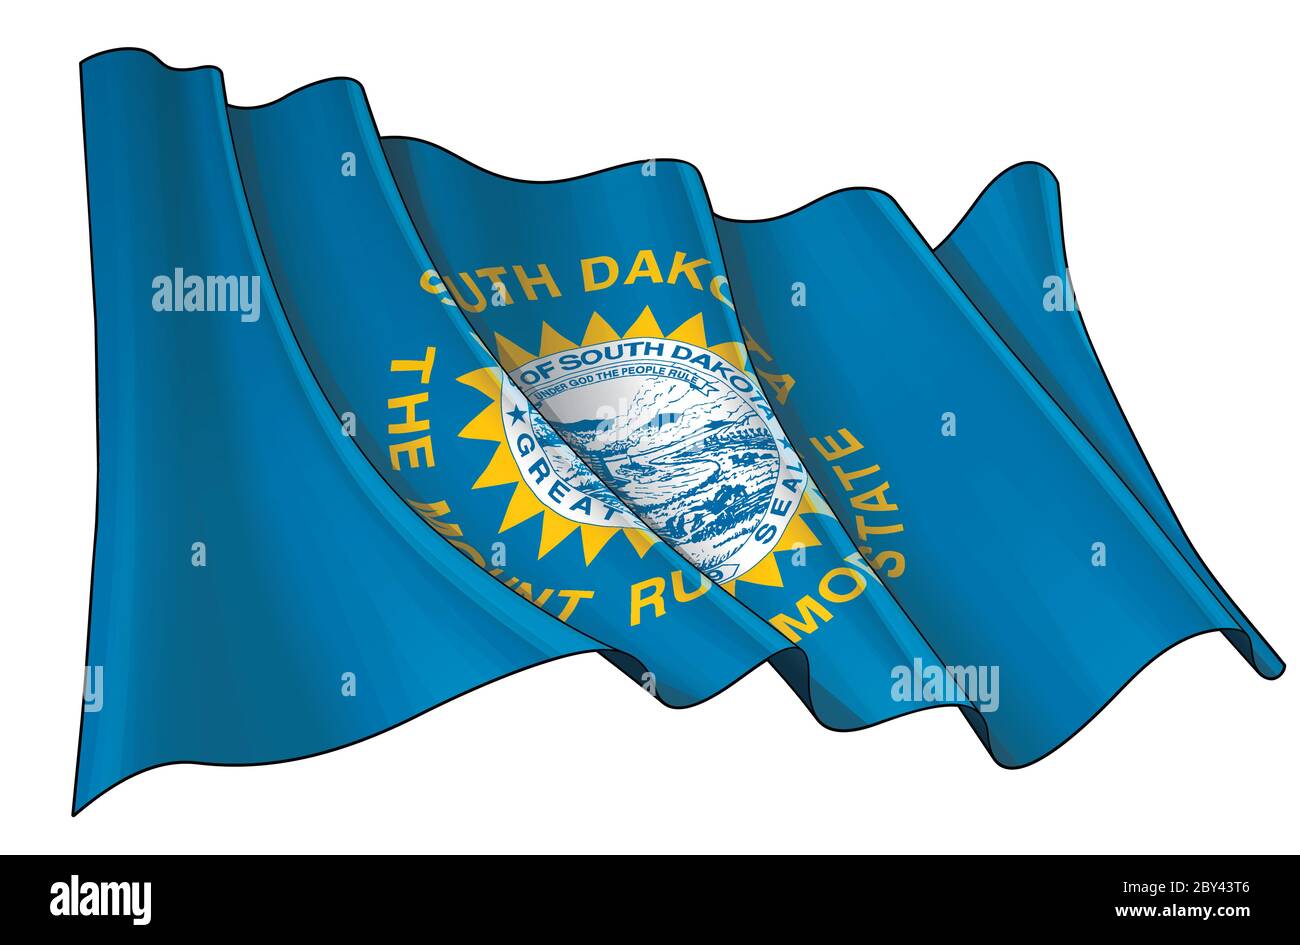 Vektorgrafik einer winkenden Flagge des Staates South Dakota. Alle Elemente übersichtlich auf klar definierten Ebenen und Gruppen. Stock Vektor